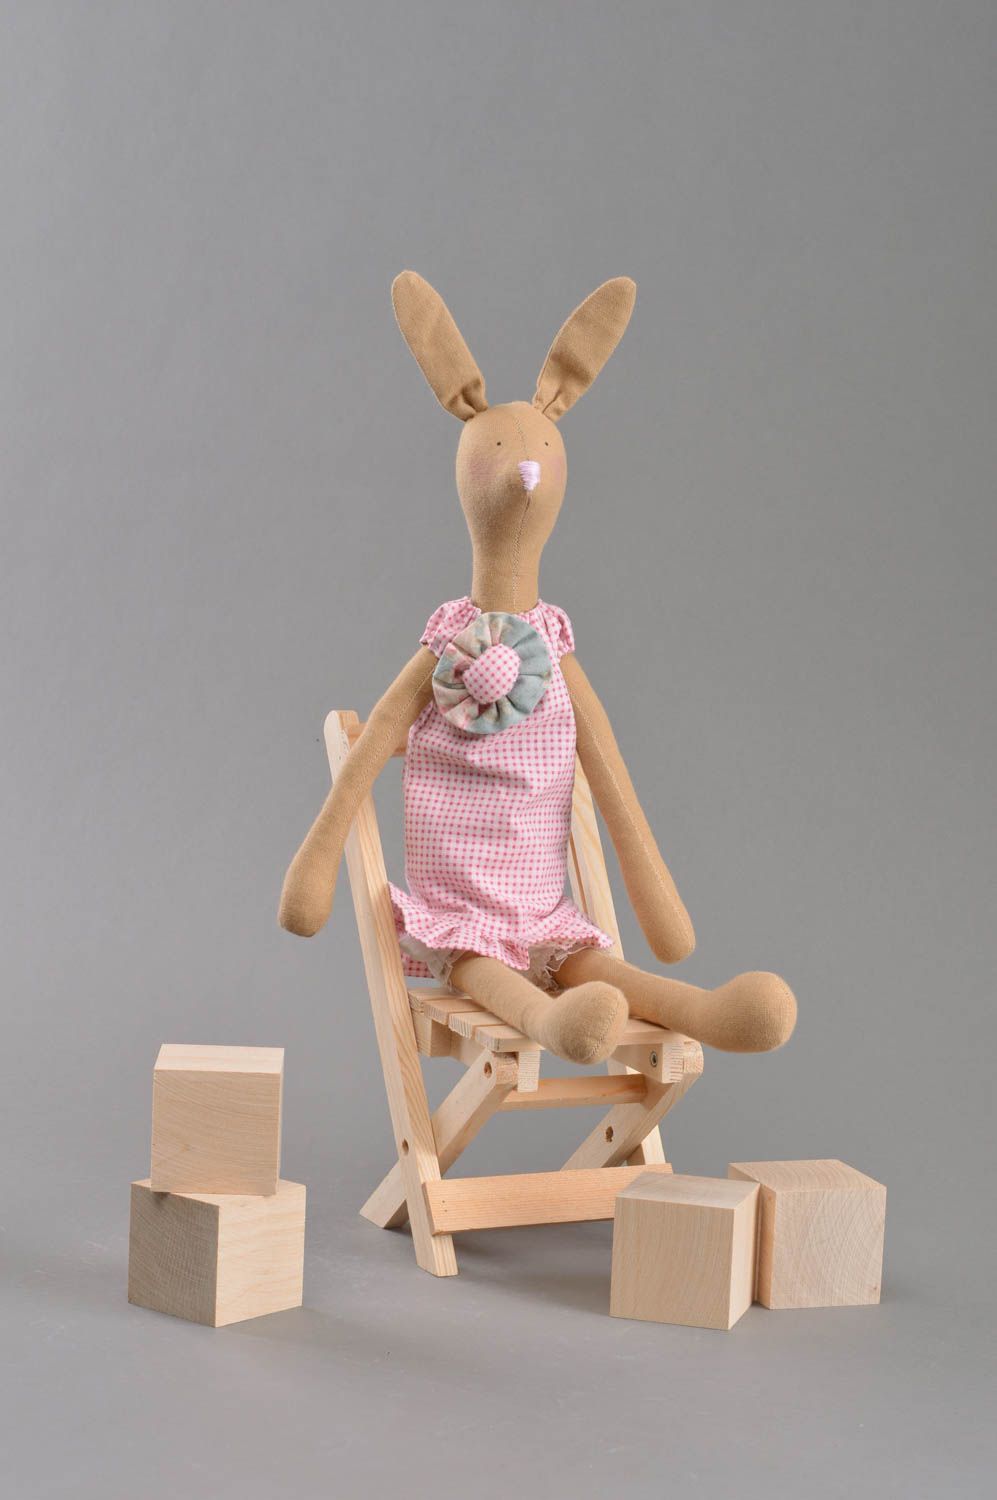 Textil Kuscheltier Hase im Trägerrock weich schön handmade Spielzeug für Kinder foto 2